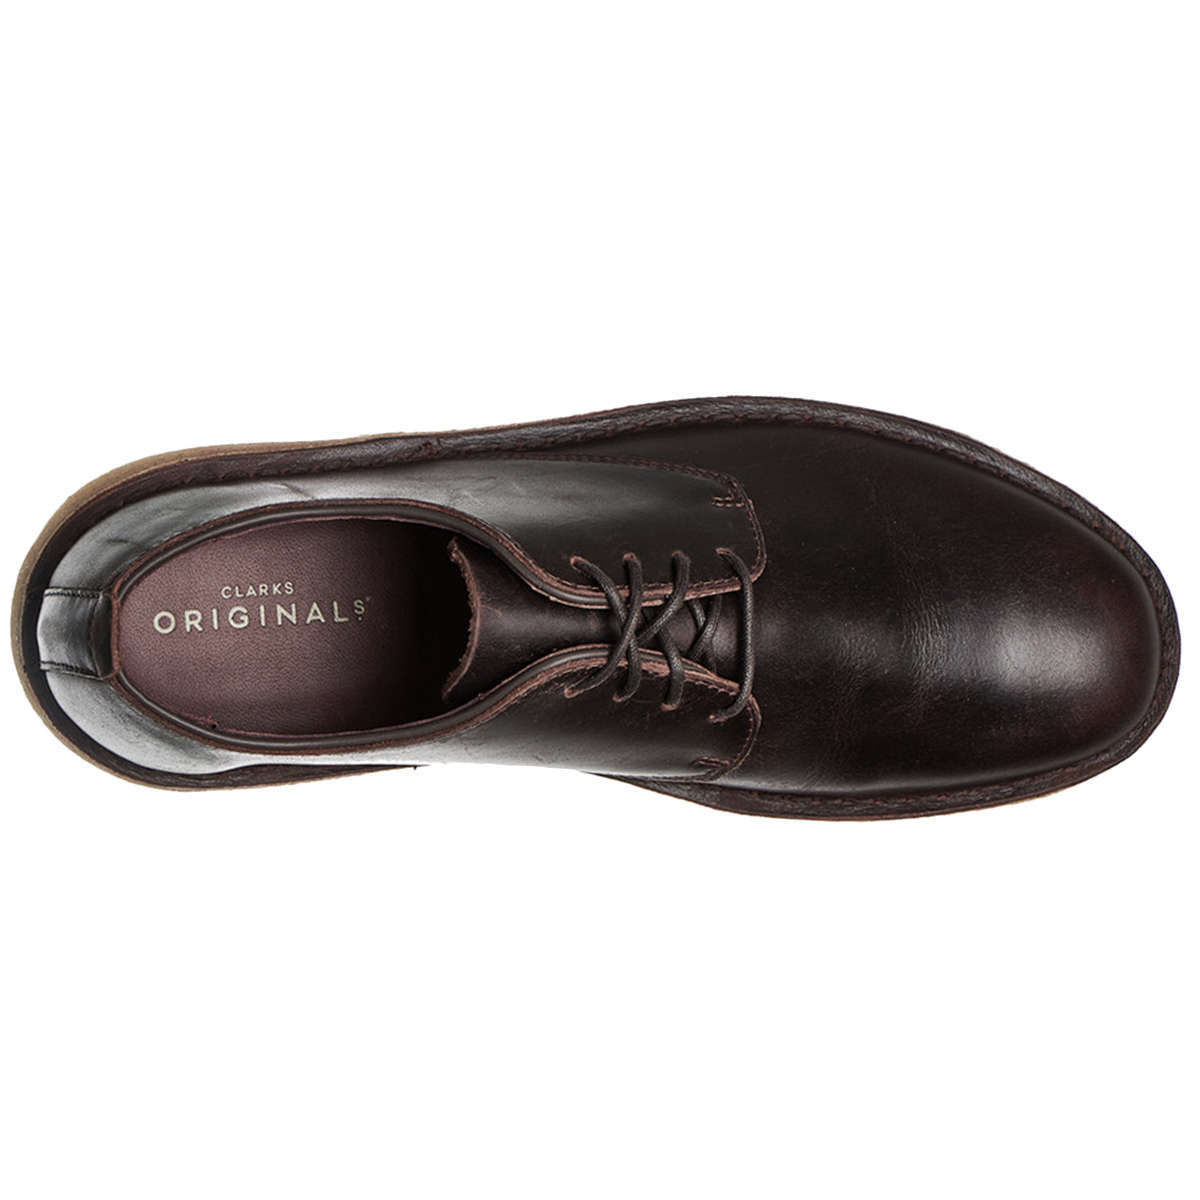 Clarks Originals Desert London Leather Men's Shoes#color_chestnut